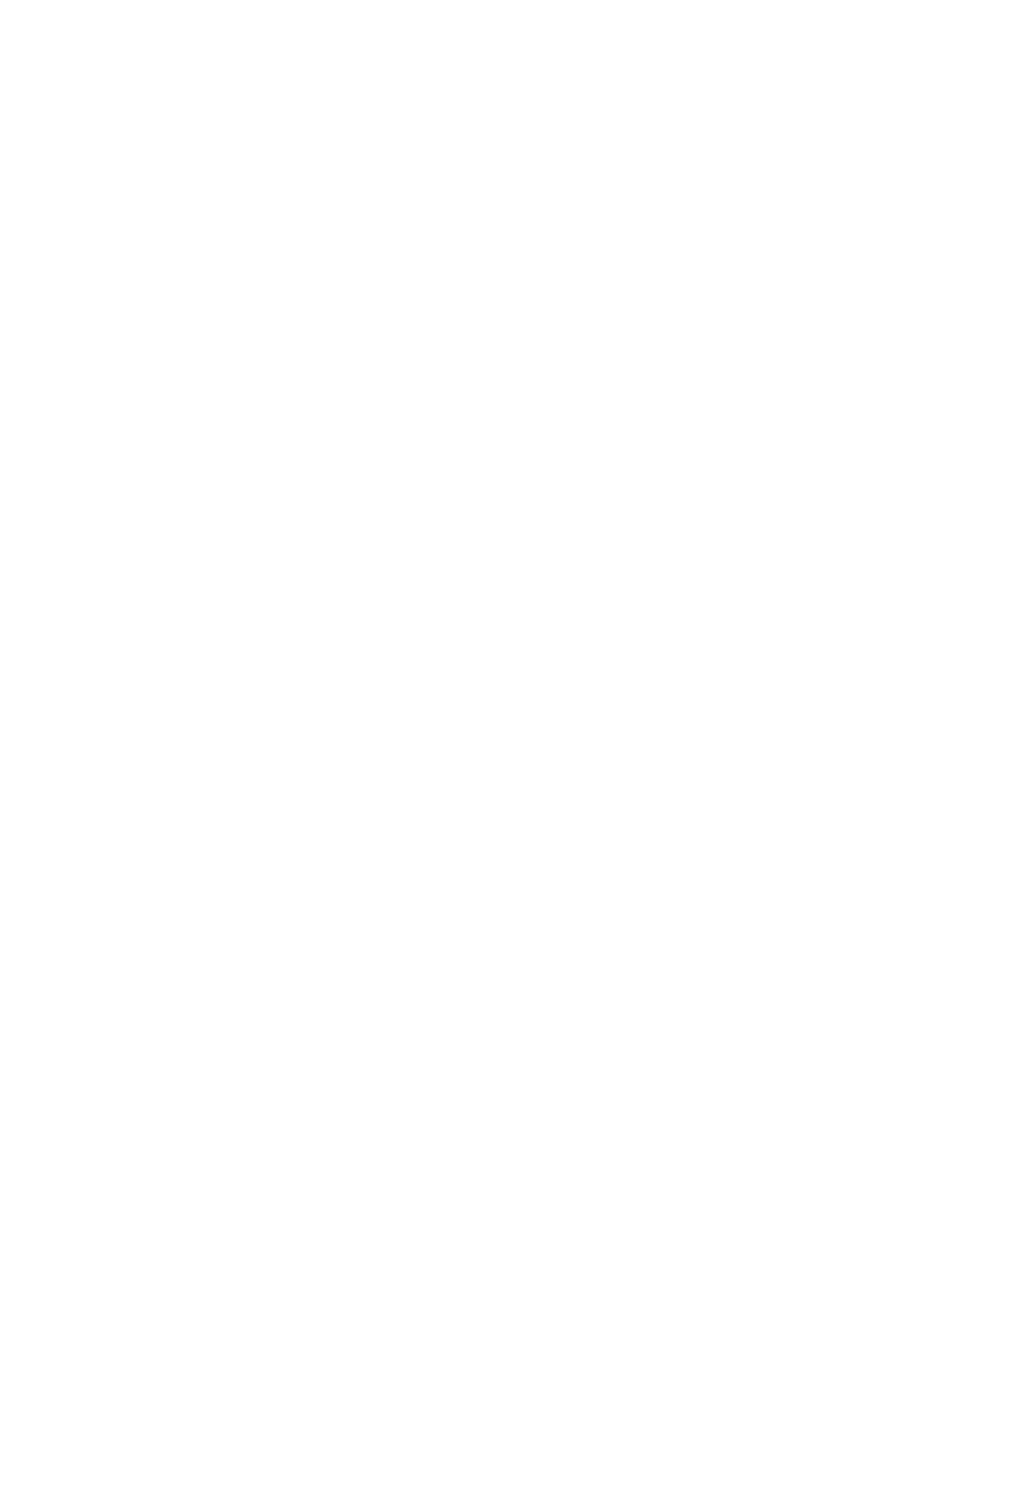 DEME Group logo pour fonds sombres (PNG transparent)